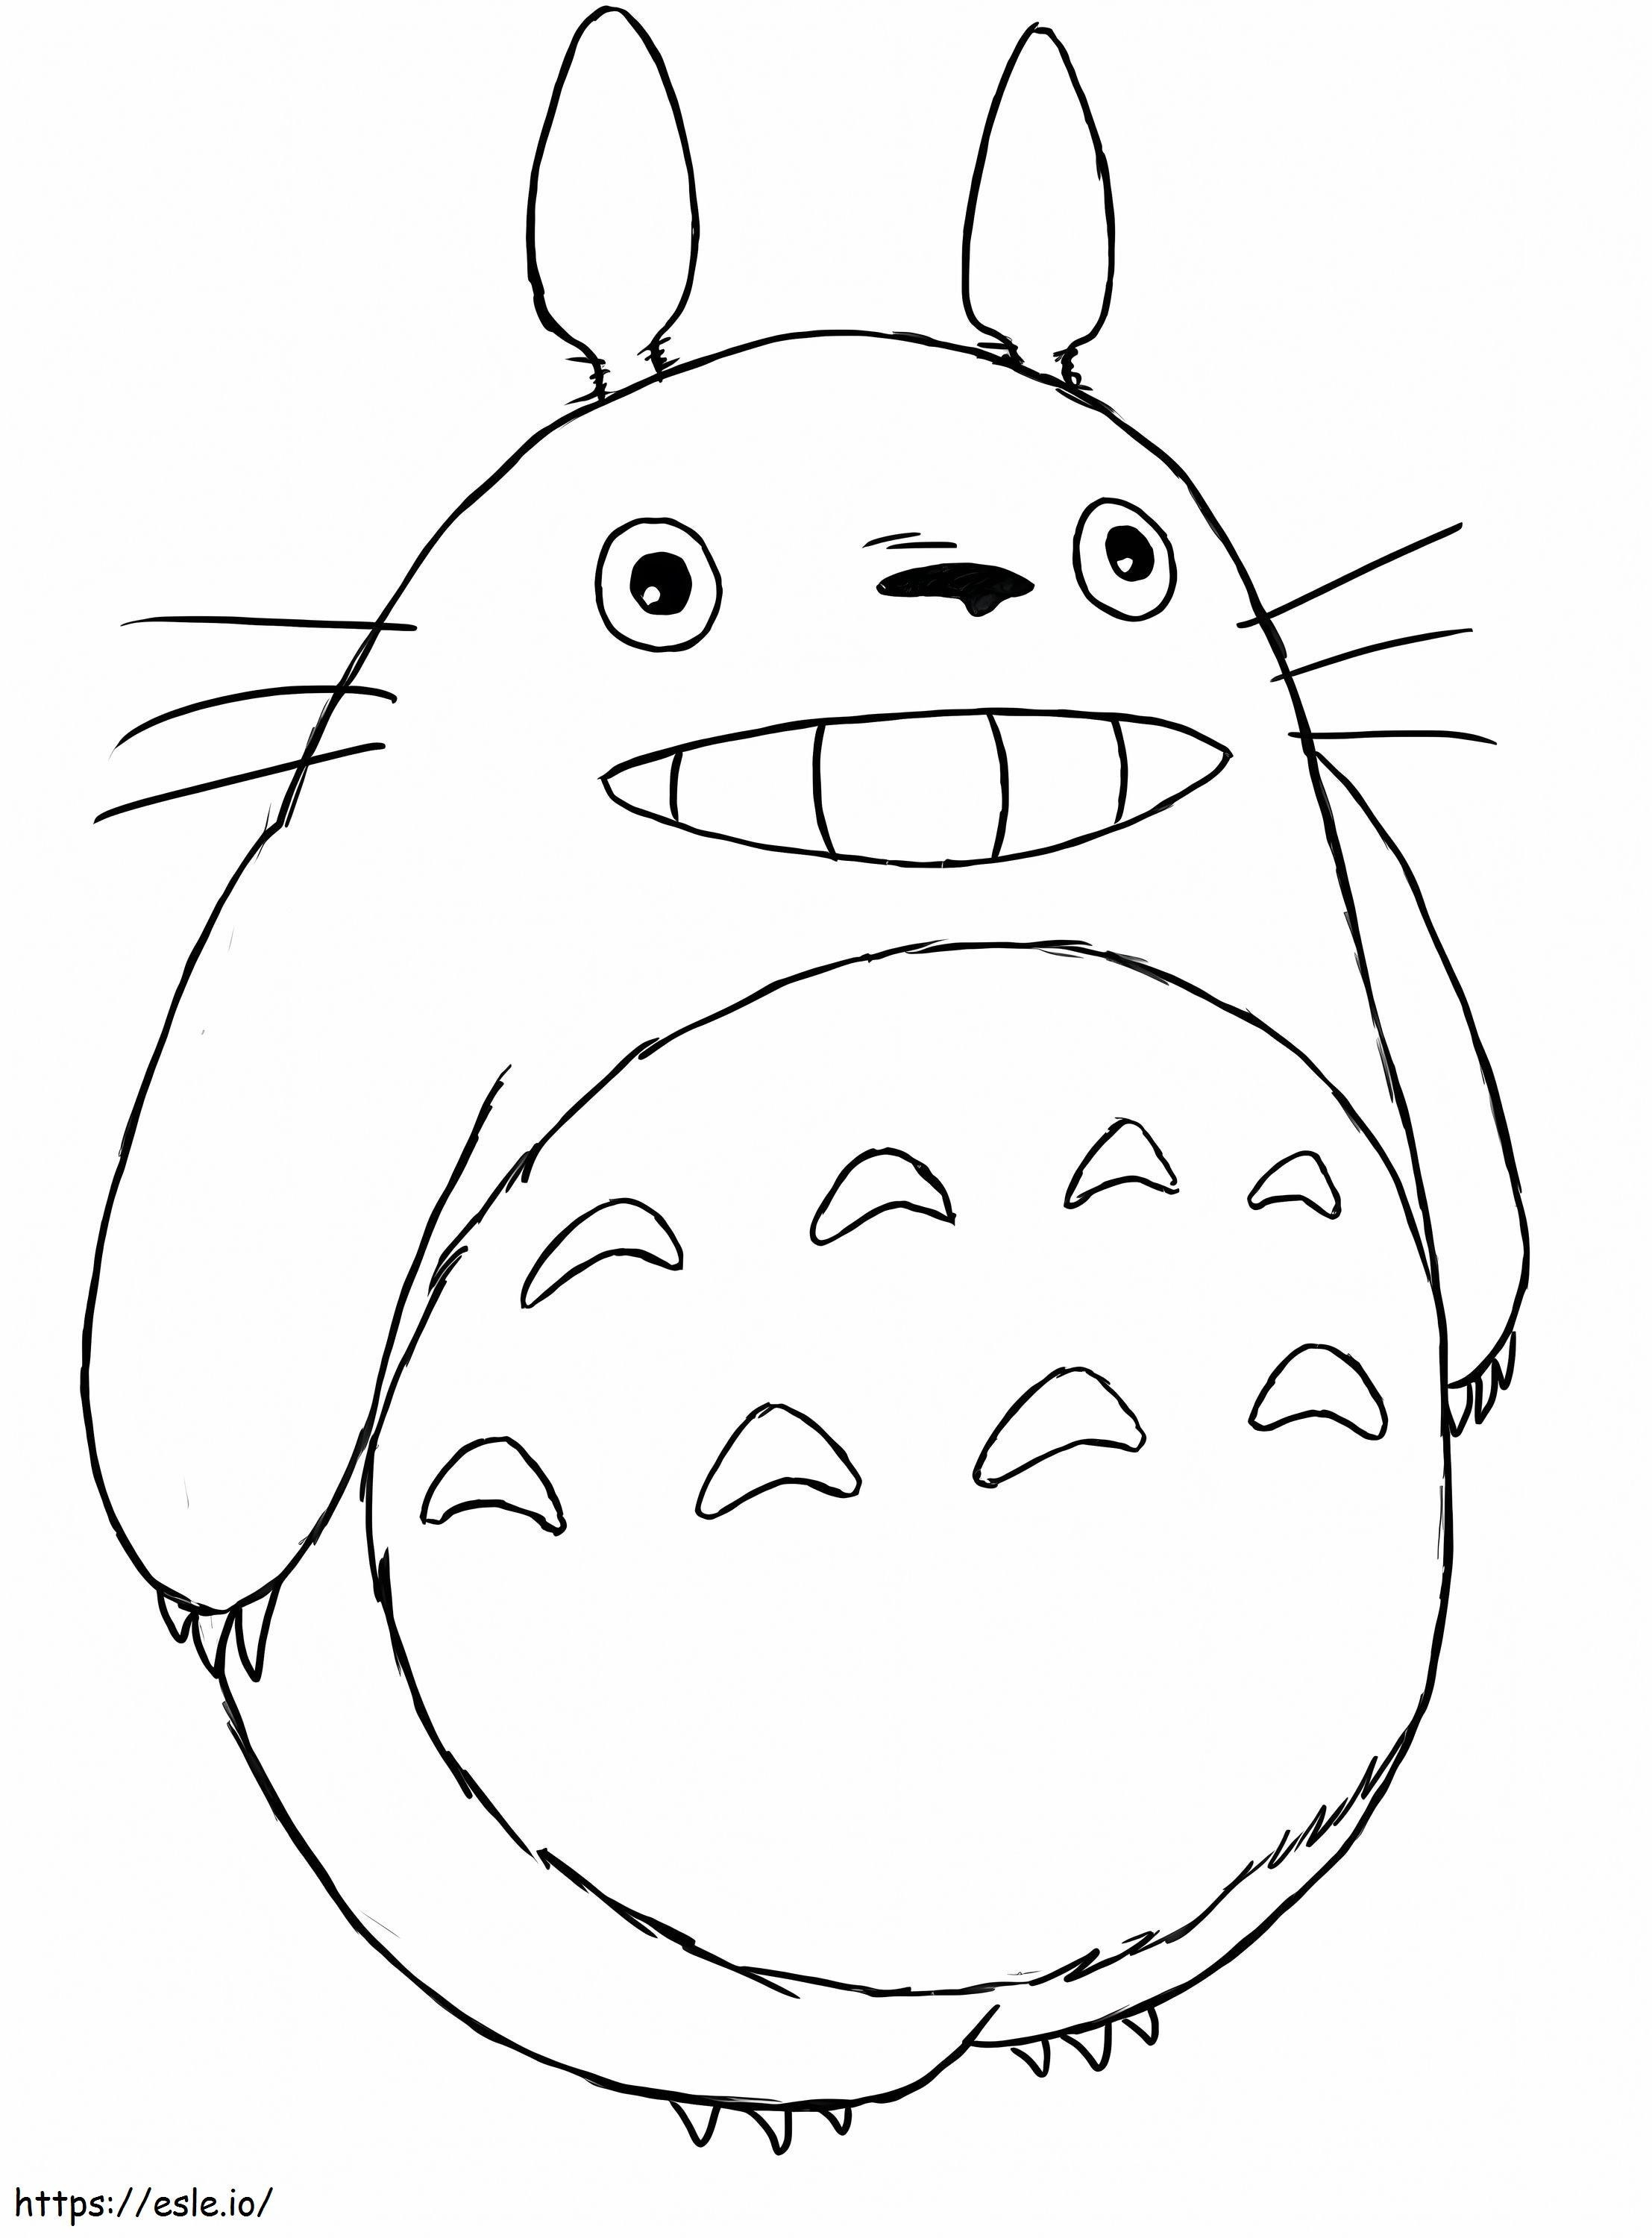 1552895488 760B8288 760B8288 Luxury Totoro Coloriage Totoron ilmainen lataus värityskuva